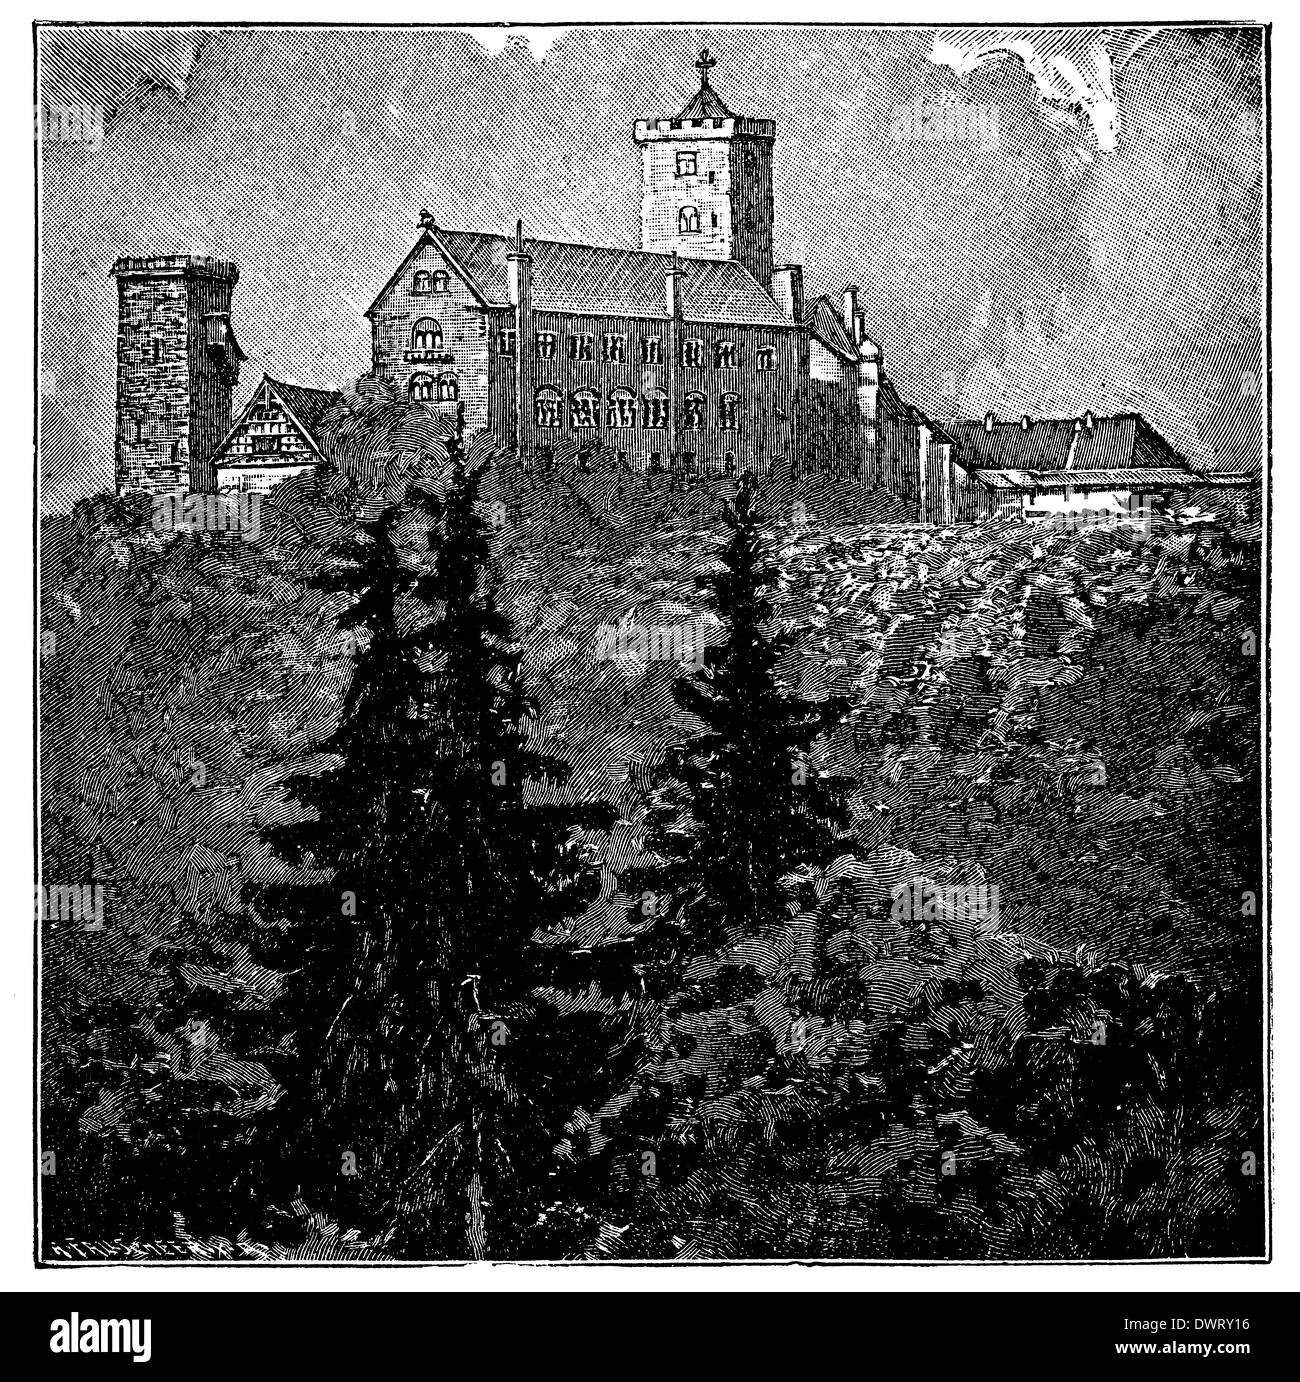 Le château de Wartburg, erlooking la ville d'Eisenach, en Thuringe, Allemagne Banque D'Images